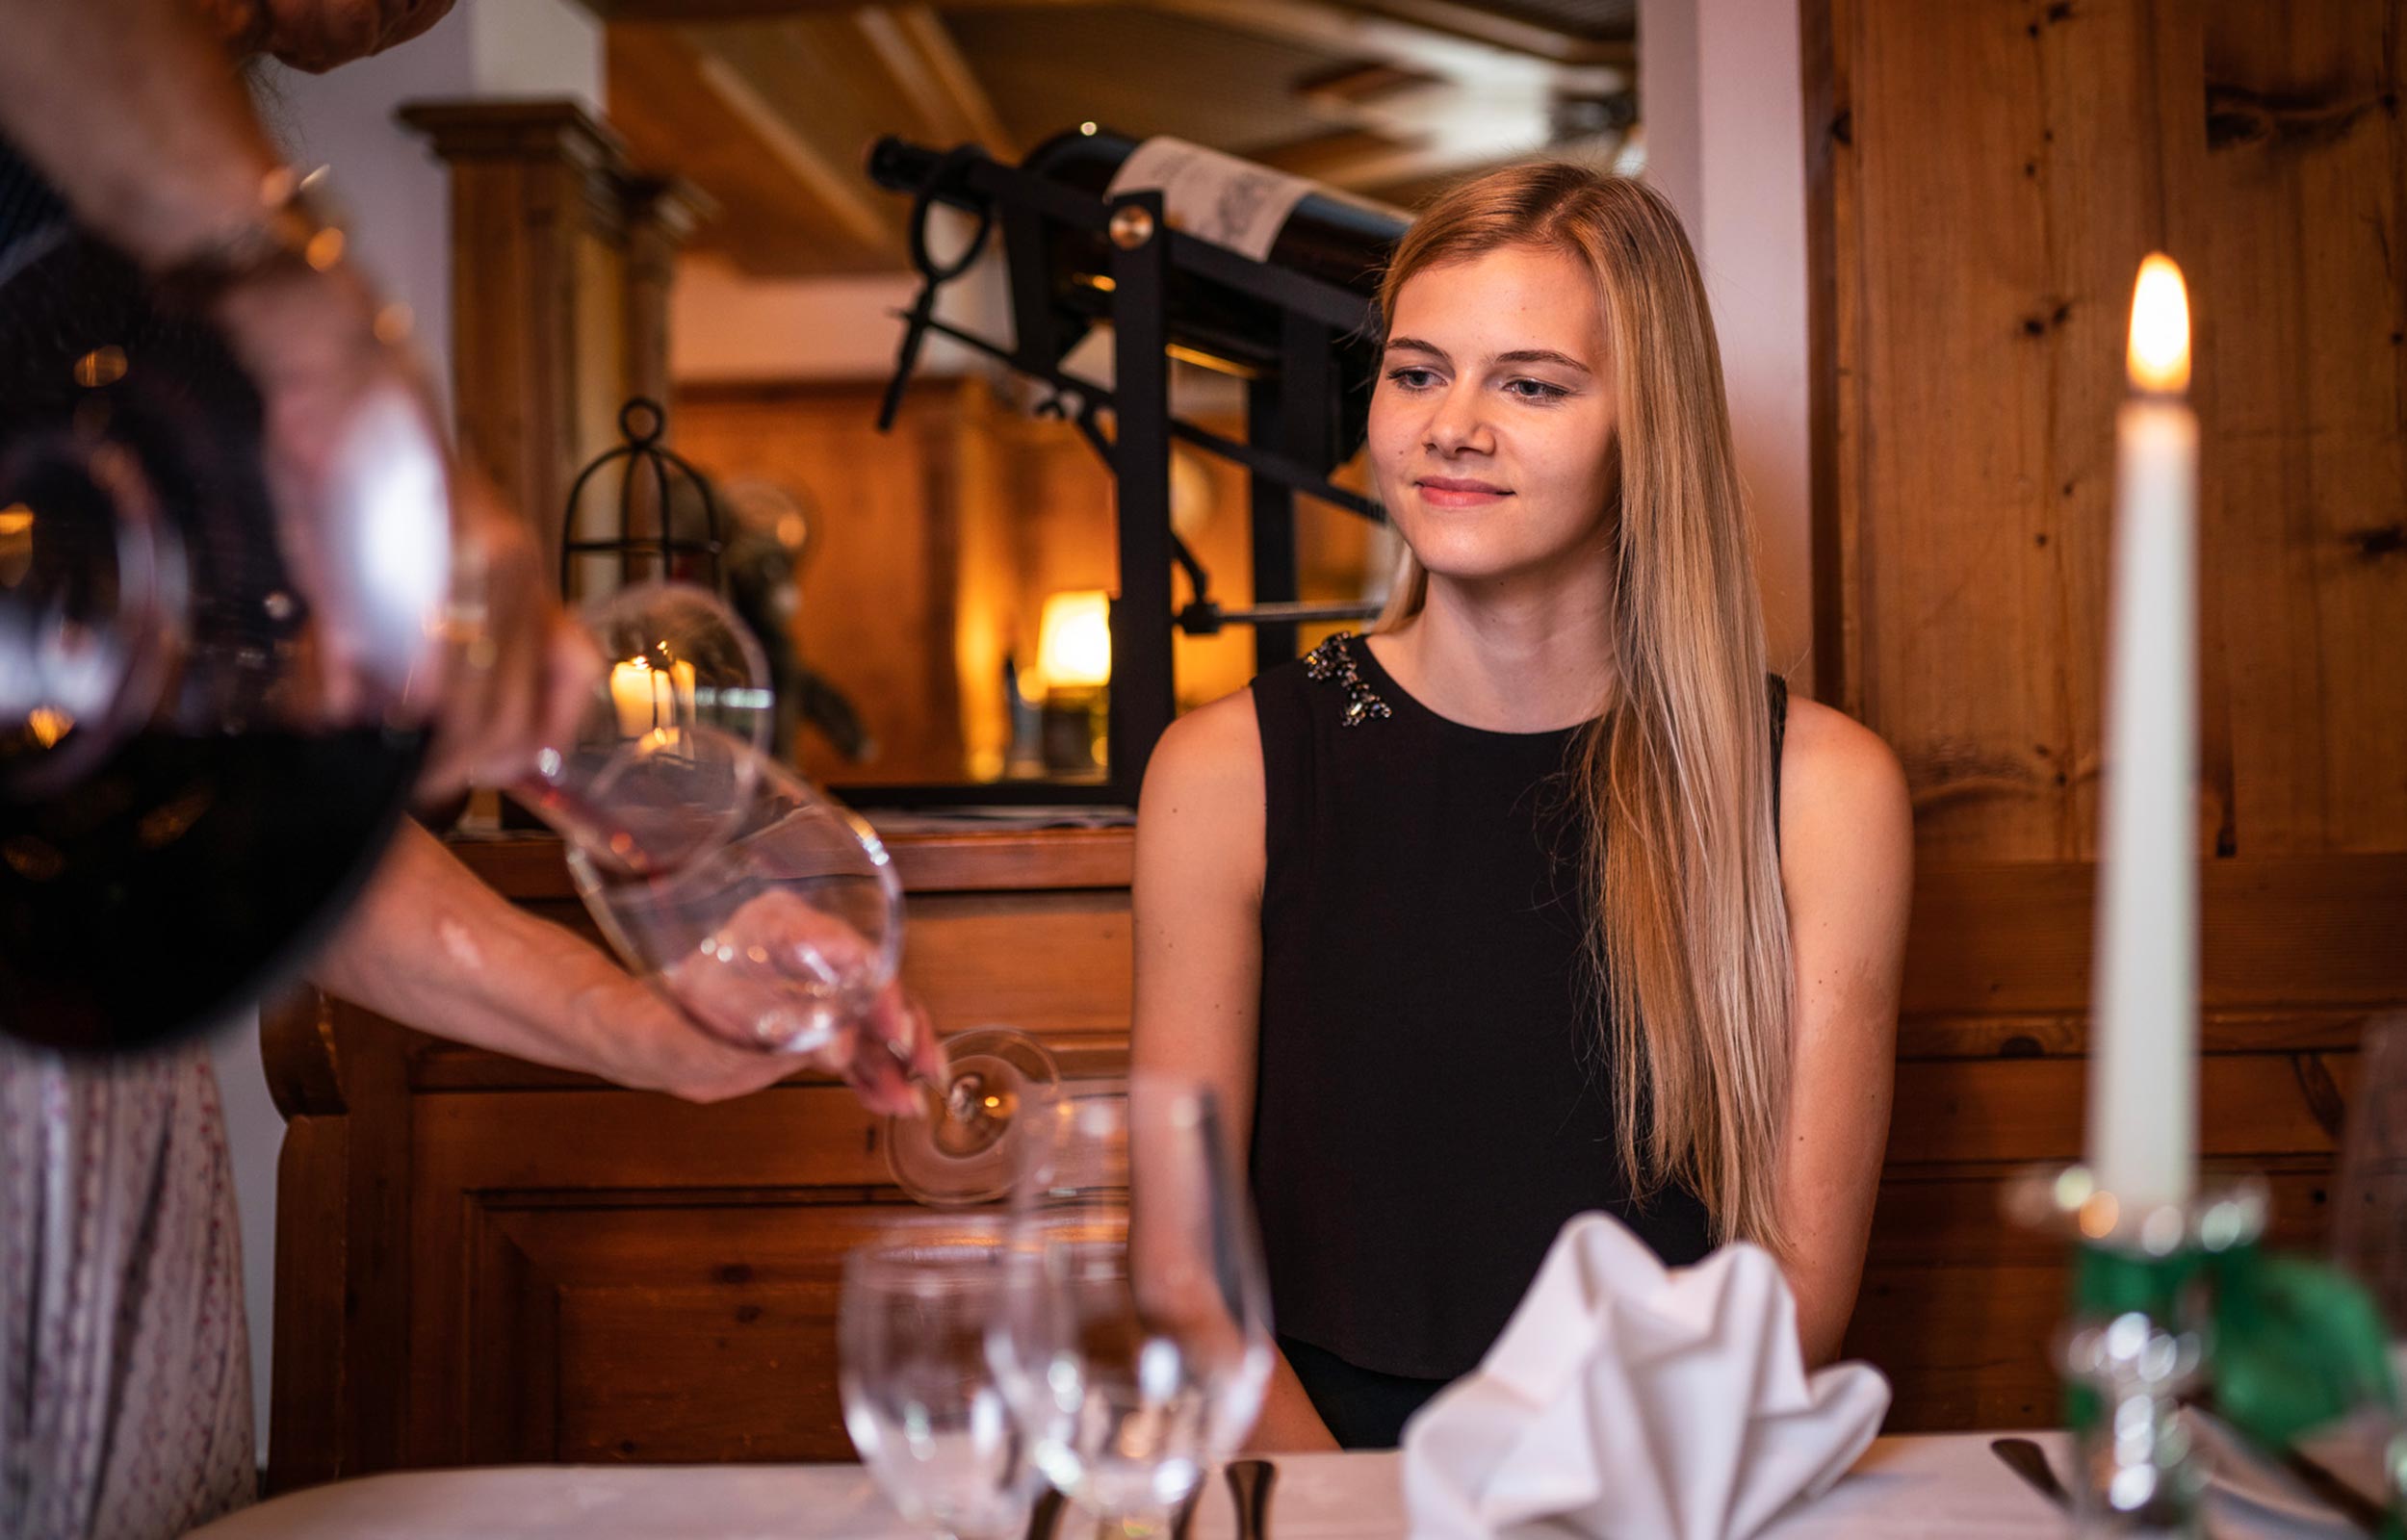 Una donna con i capelli lunghi biondi osserva una persona che versa del vino rosso in un bicchiere.